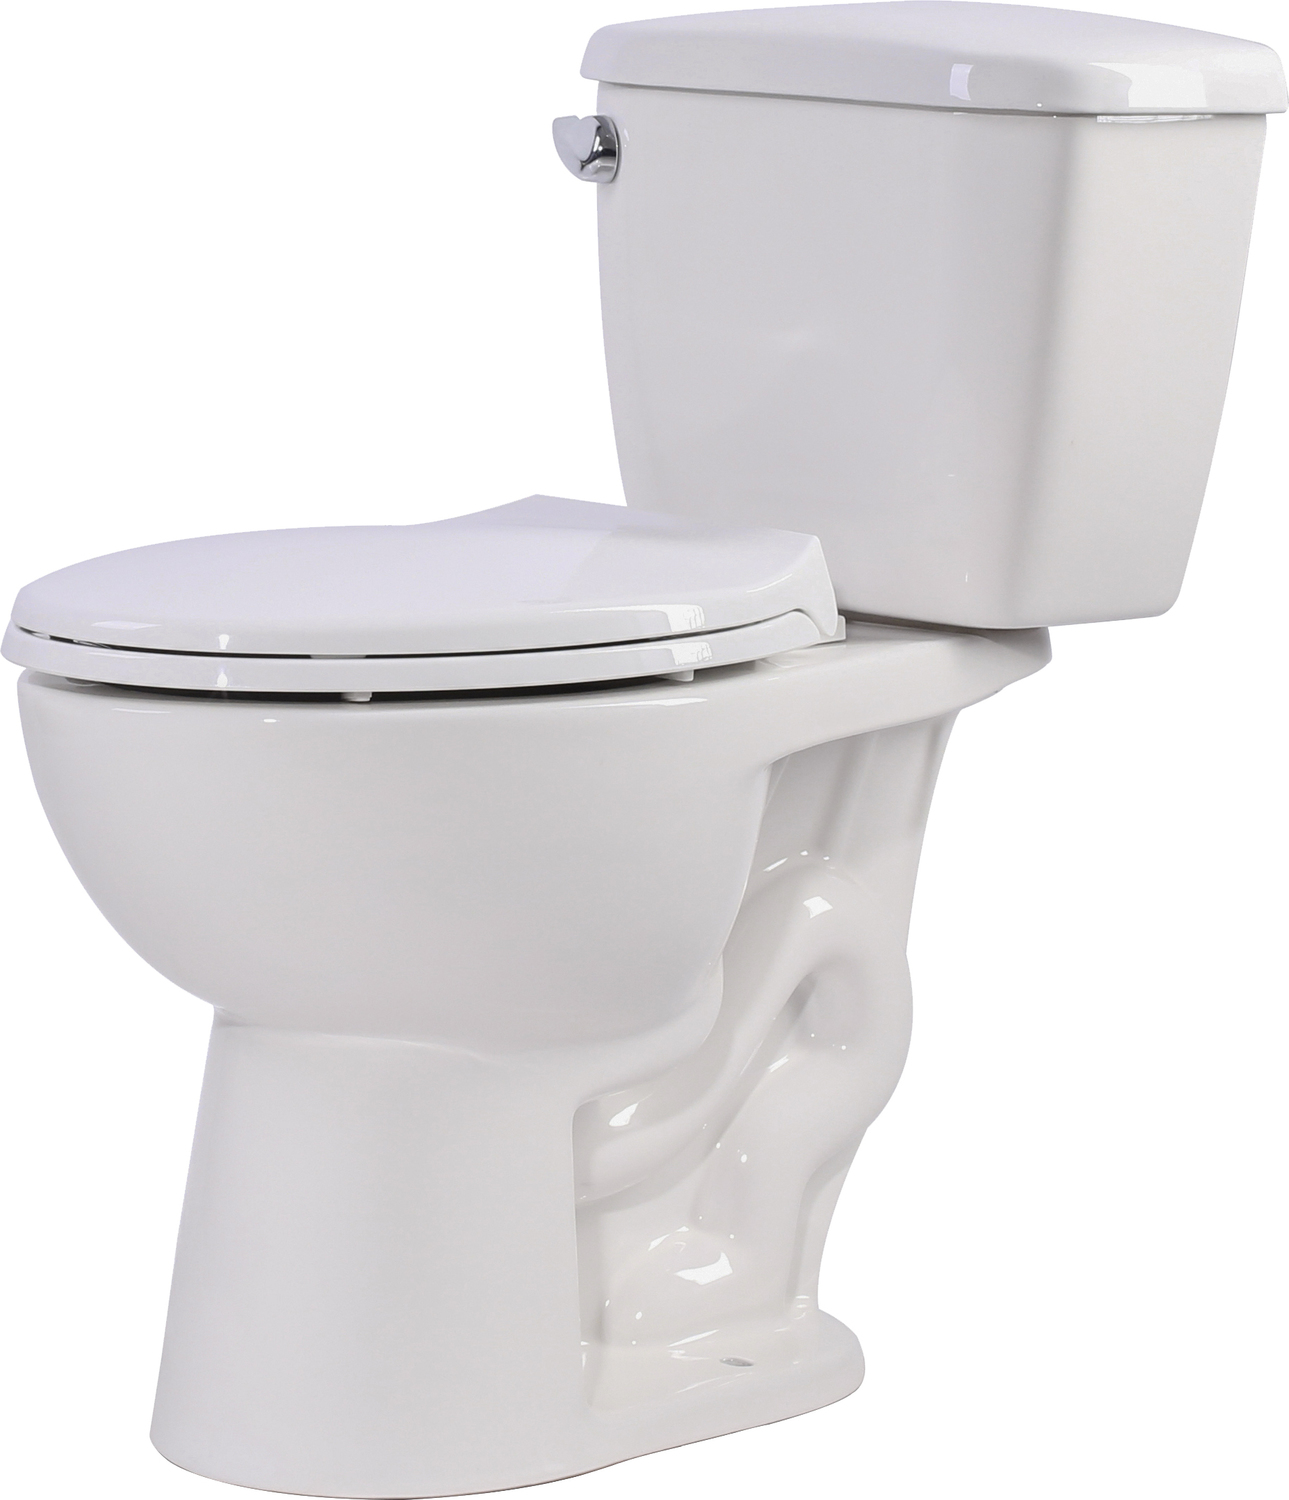 Anzzi Toilets Toilets White